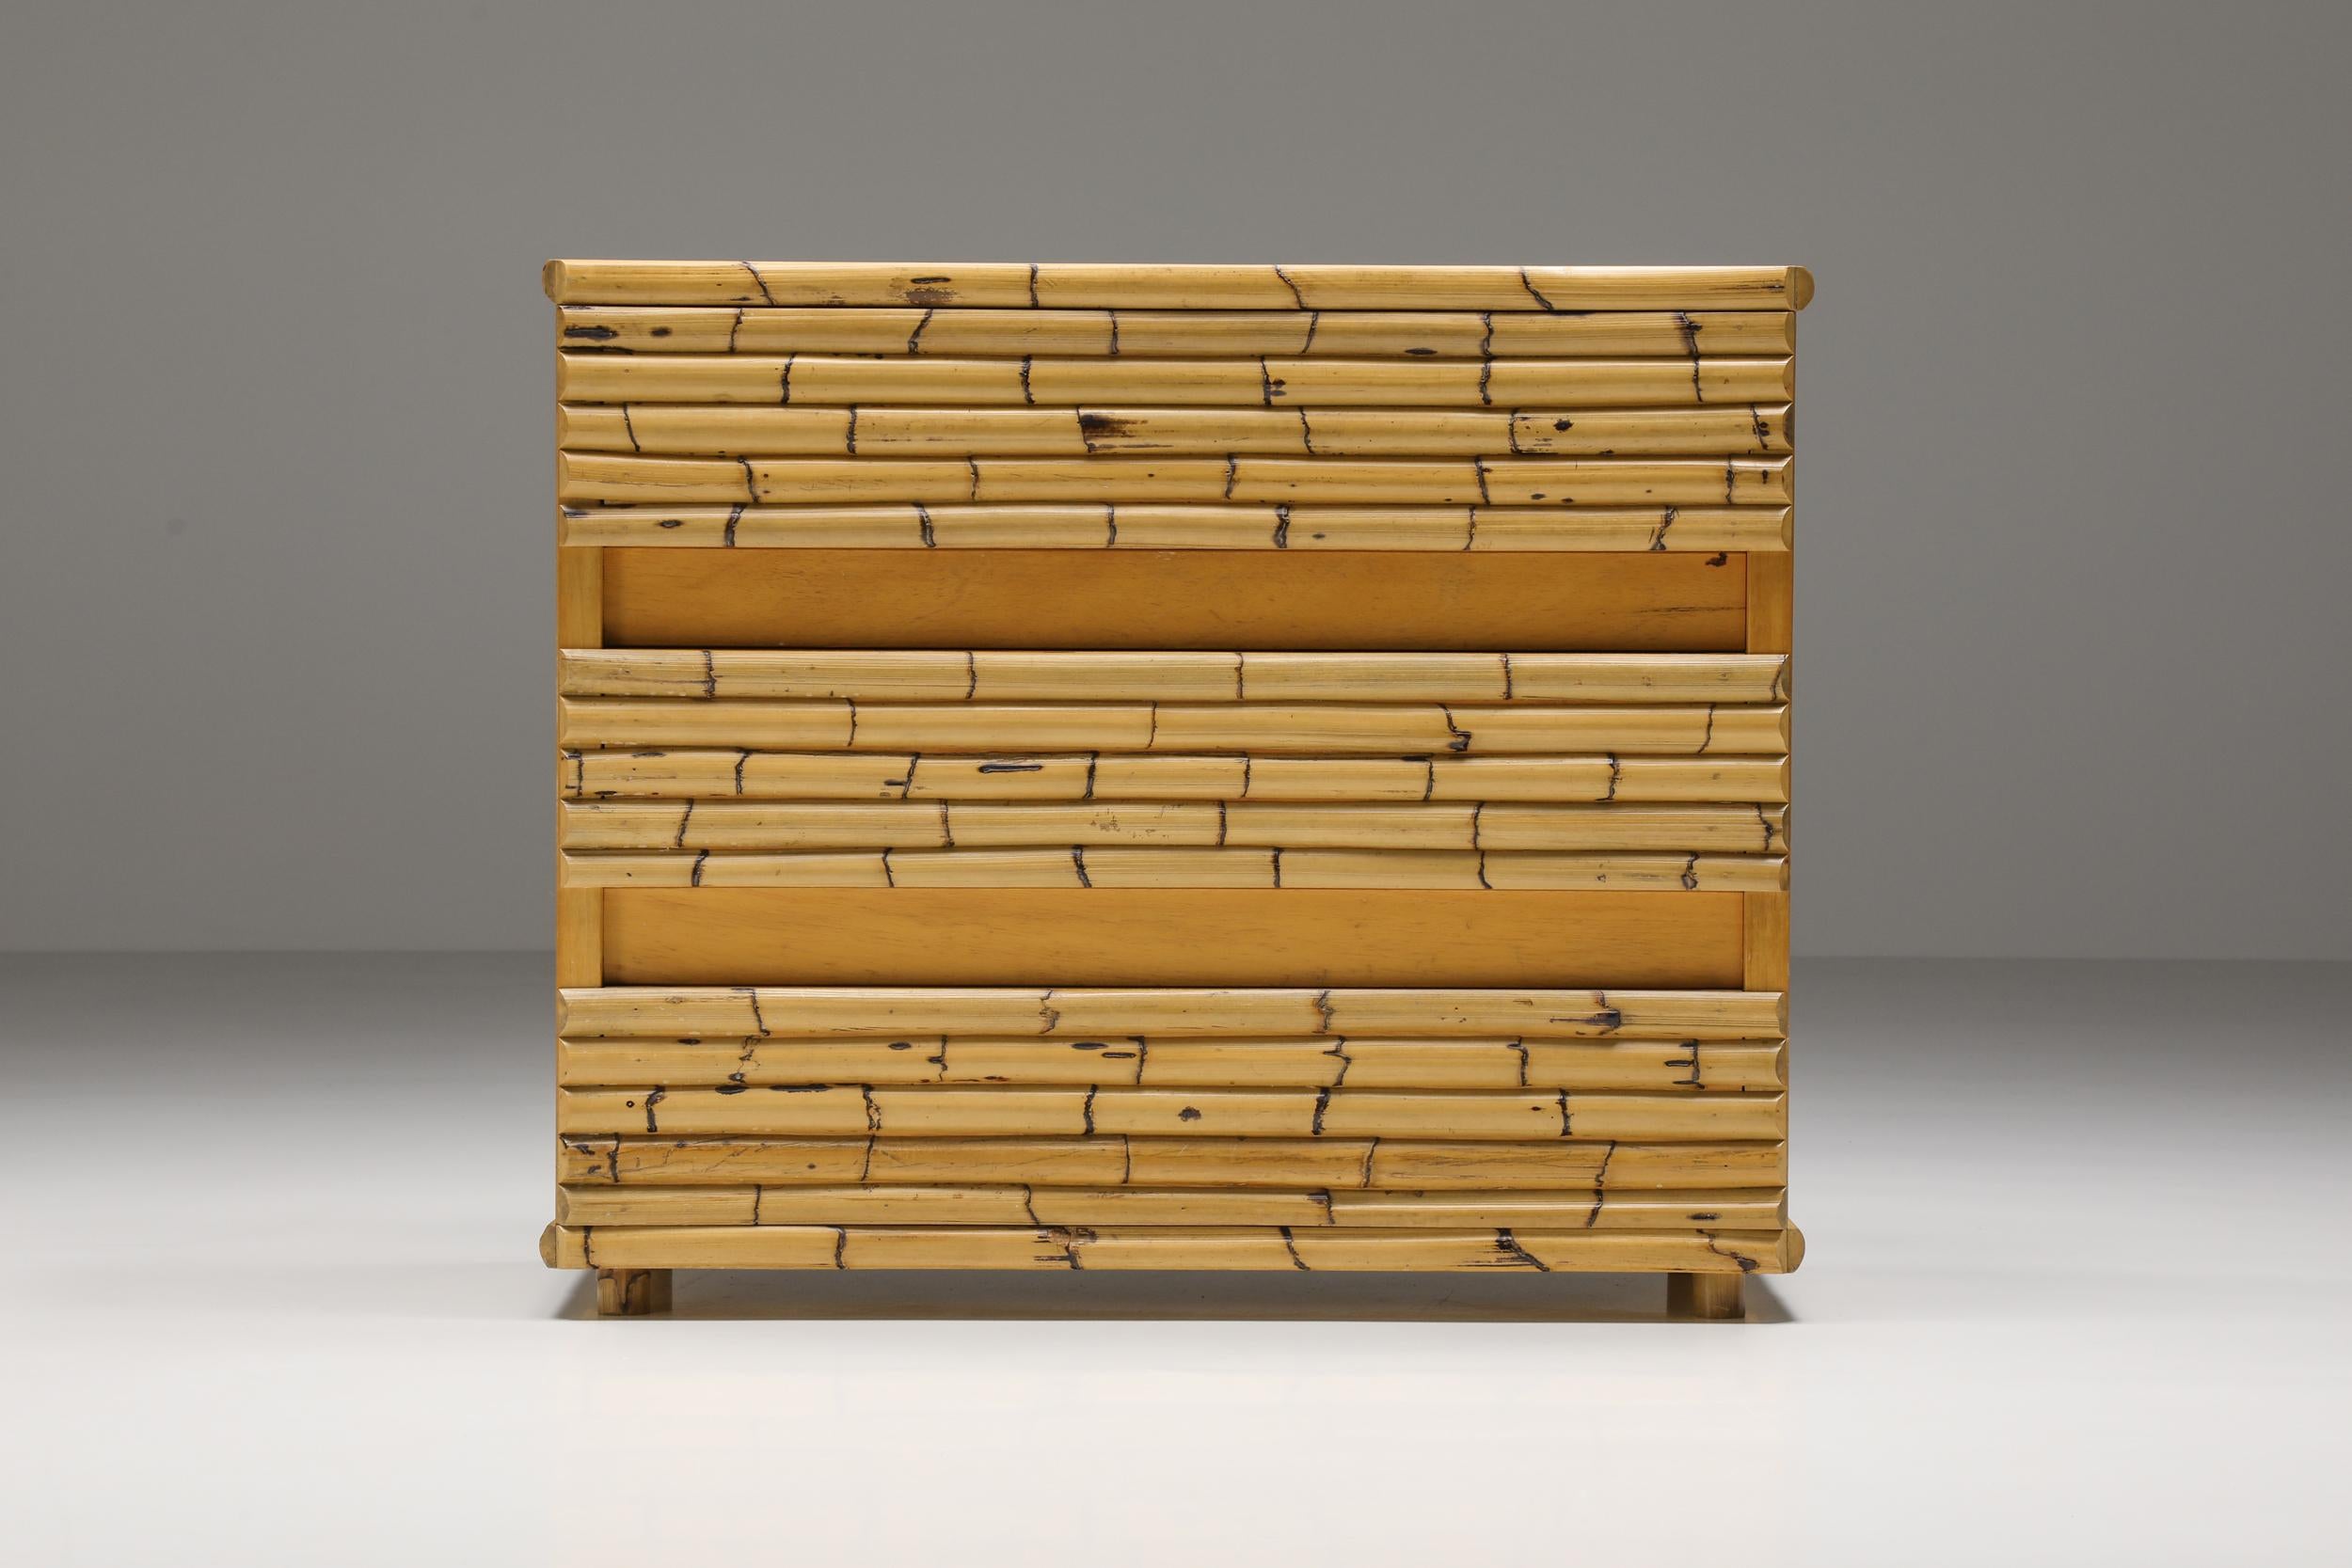 Tropische, moderne Kommode aus Bambus, entworfen vom italienischen Architekten Venturini aus Florenz. Das hochwertige Stück besteht aus 3 größeren Schubladen und ist mit Bambus verarbeitet. Würde sich gut in einer von Gabriella Crespi inspirierten